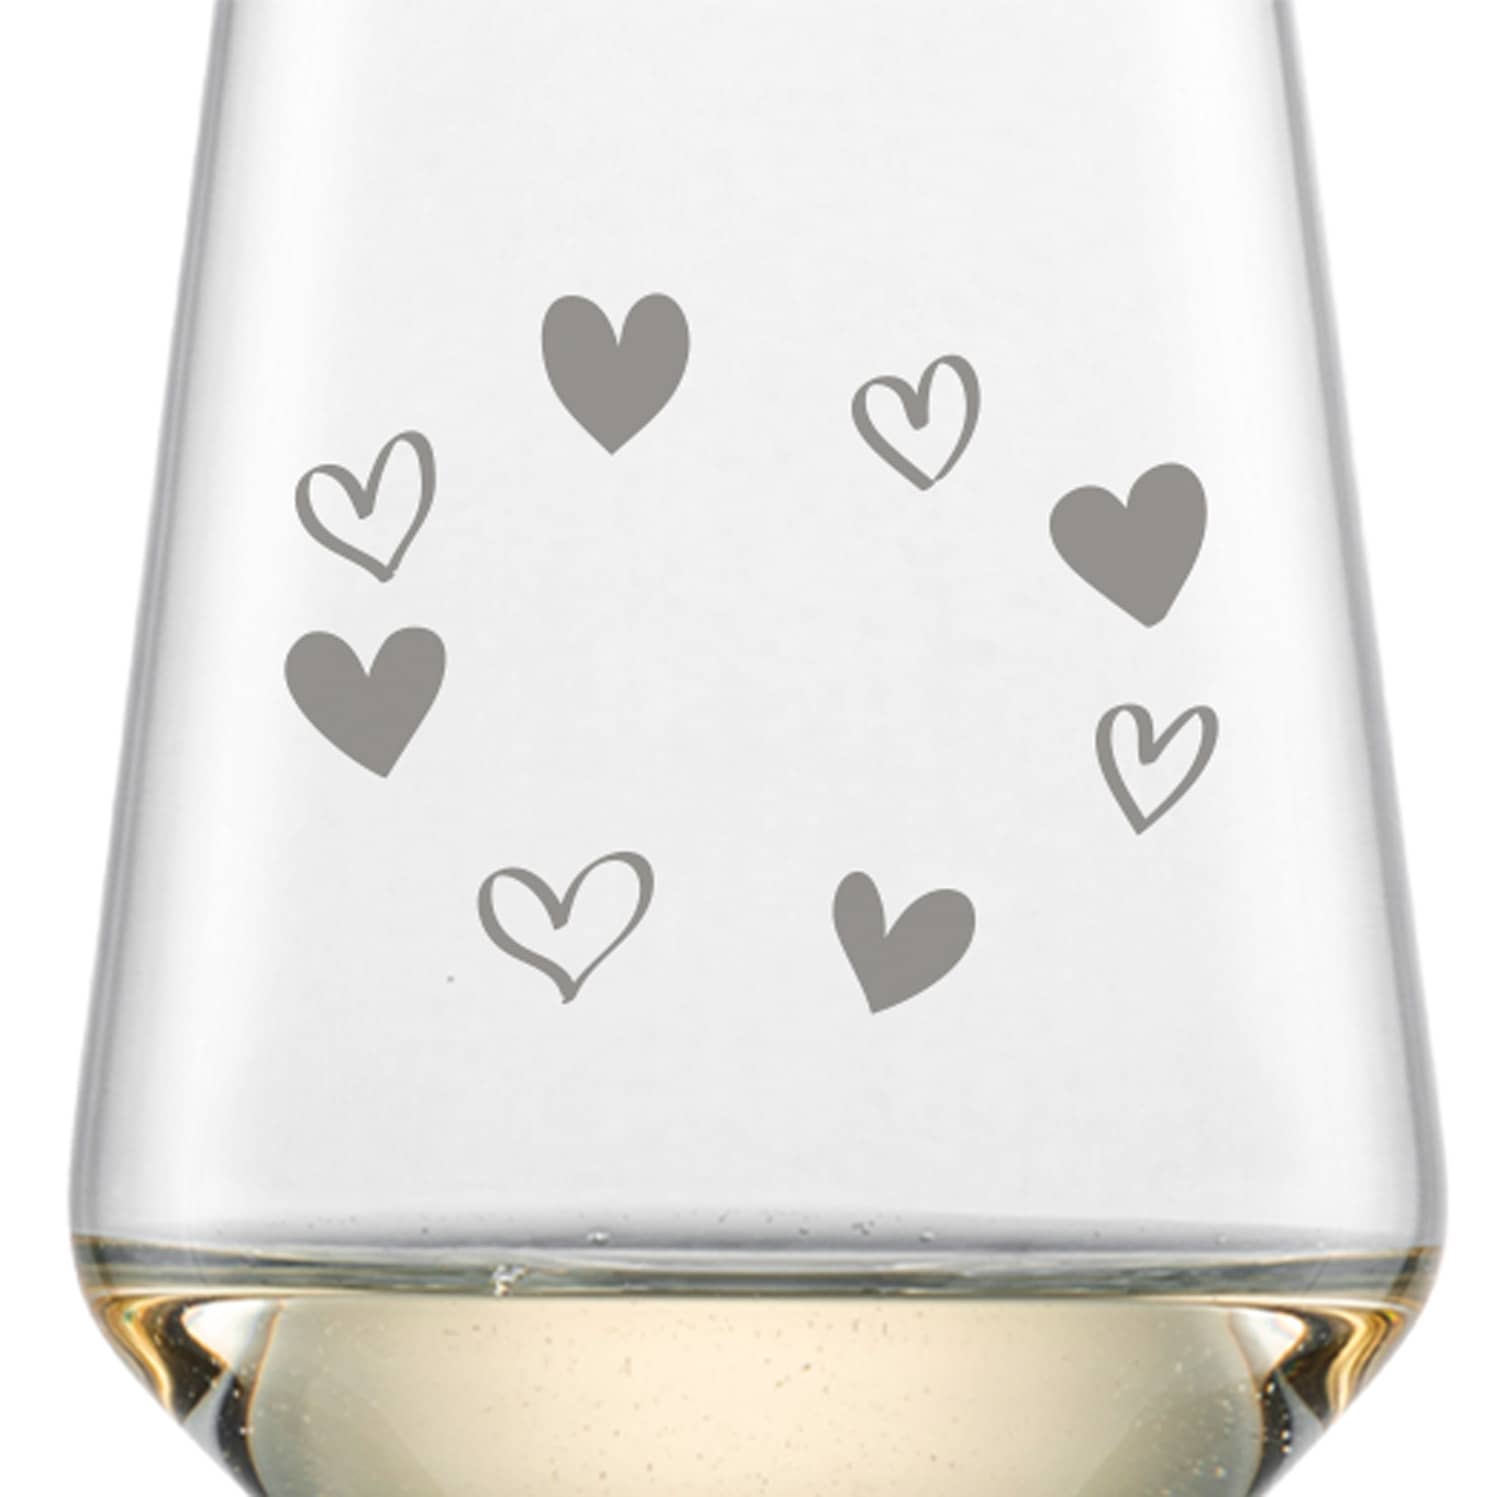 Schott Zwiesel Riesling Weißweinglas PURE mit Namen oder Wunschtext graviert (Herzkreis)